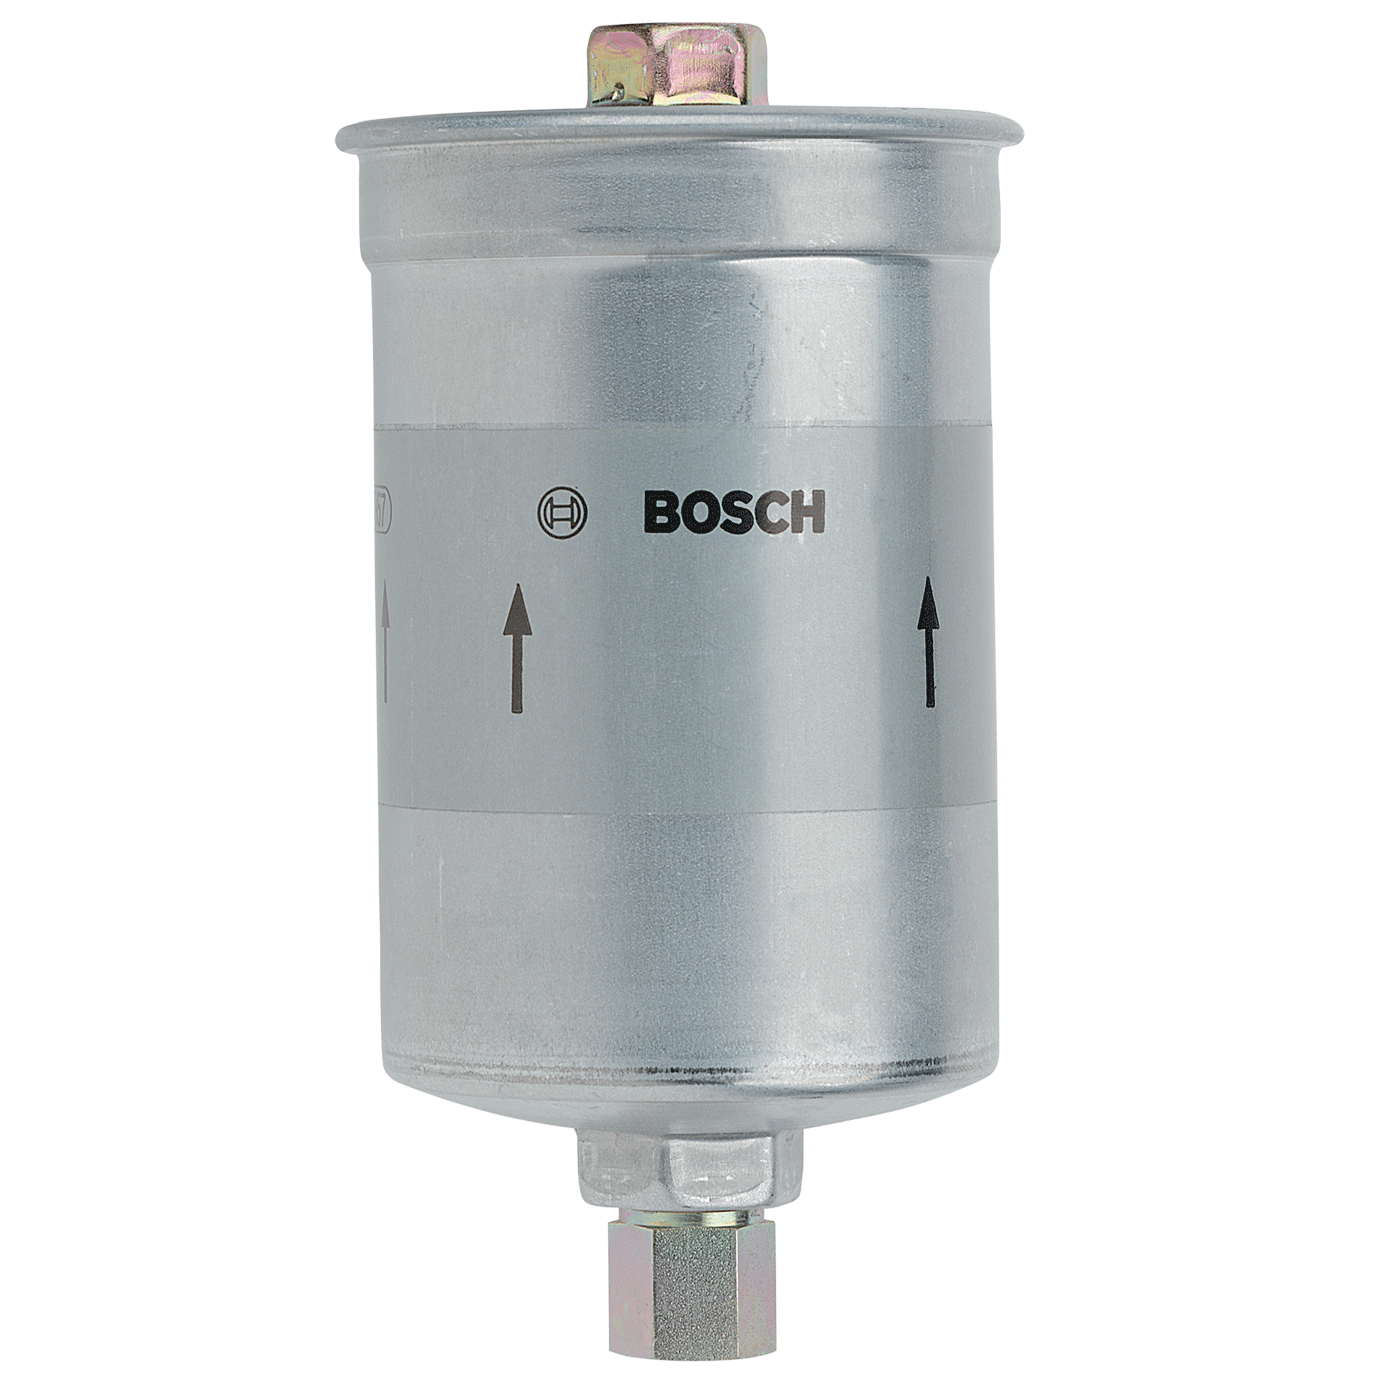 Bosch N4025 Diesel Filter Auto